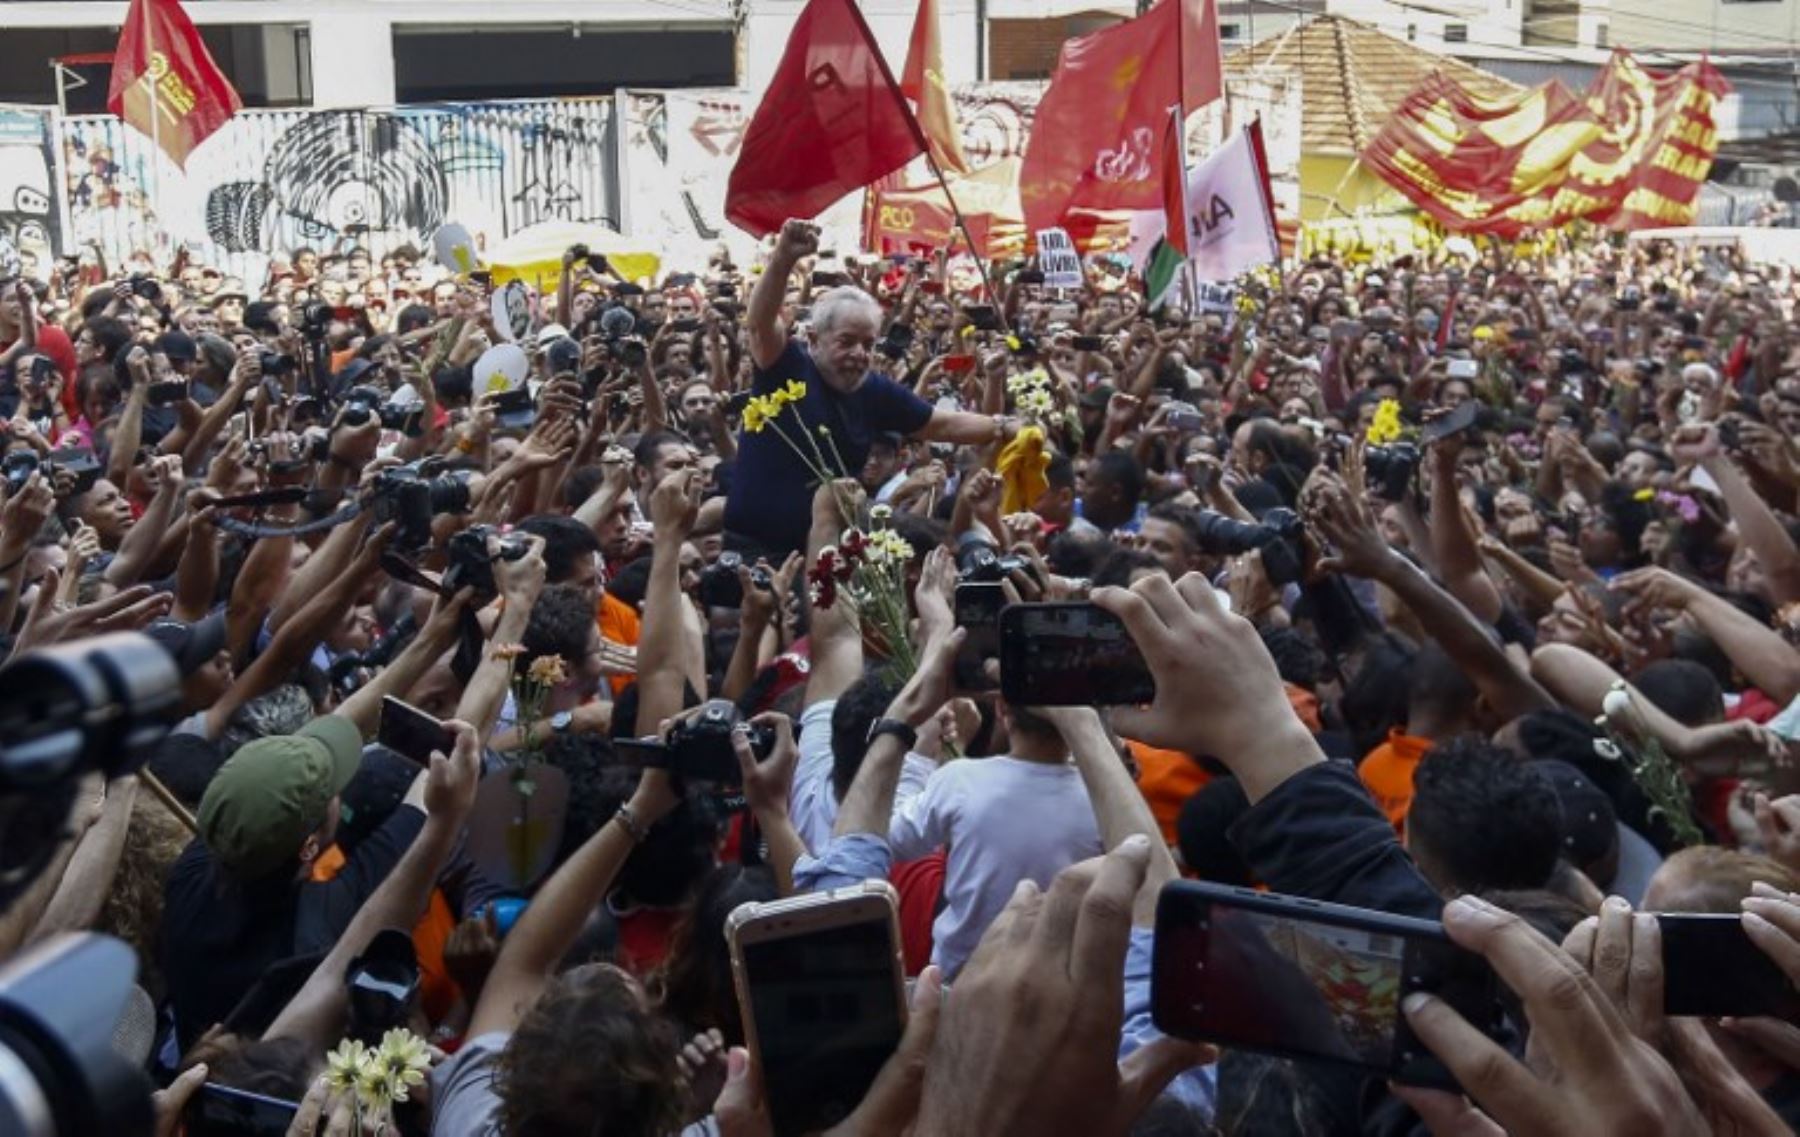 El ex presidente brasileño Luiz Inácio Lula da Silva levanta el puño después de asistir a una misa católica en memoria de su difunta esposa Marisa Leticia, en el edificio del sindicato de trabajadores metalúrgicos en Sao Bernardo do Campo.Foto:AFP